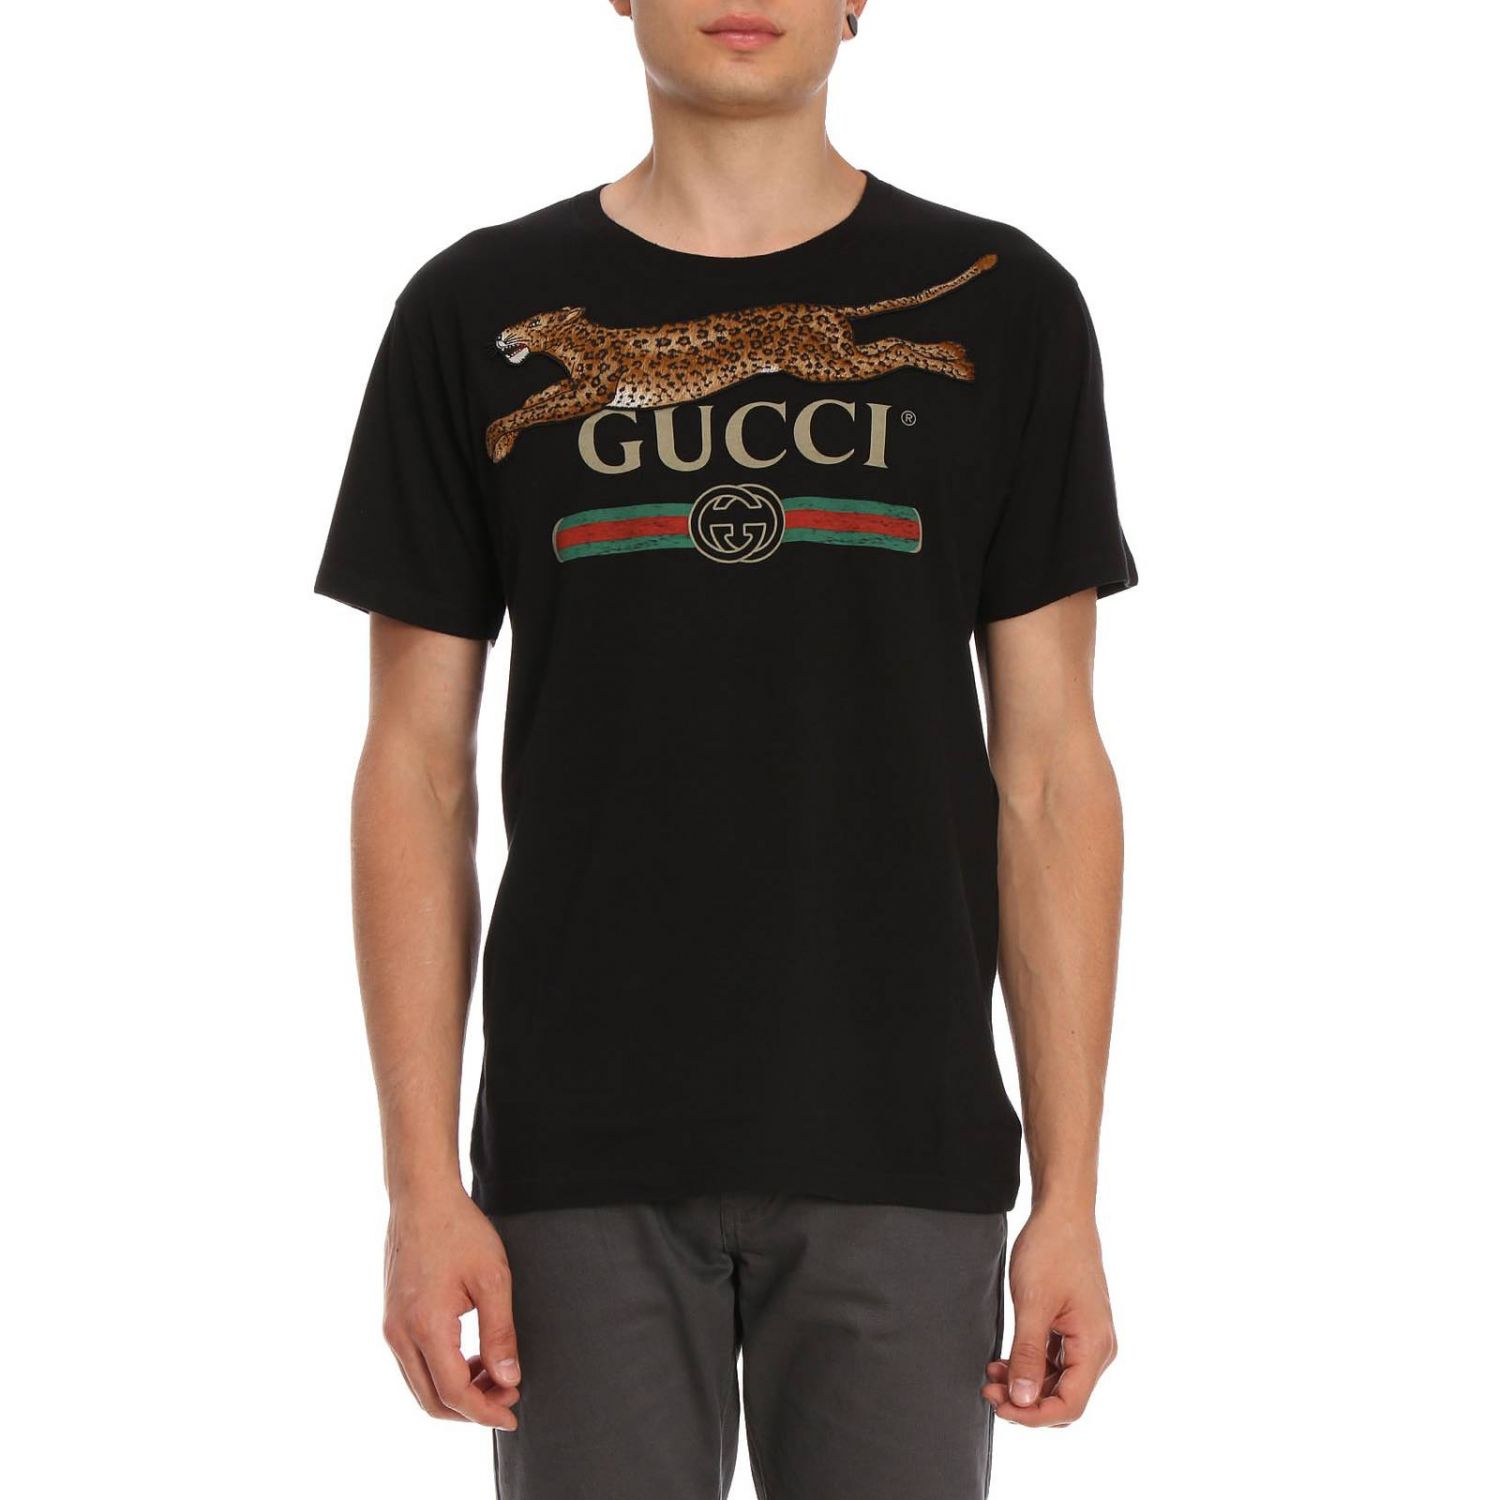 T-shirt in cotone con stampa Classic Gucci e maxi patch tigre in cavallino  | T-Shirt Gucci Uomo Nero | T-Shirt Gucci 493117 X9X96 Giglio IT